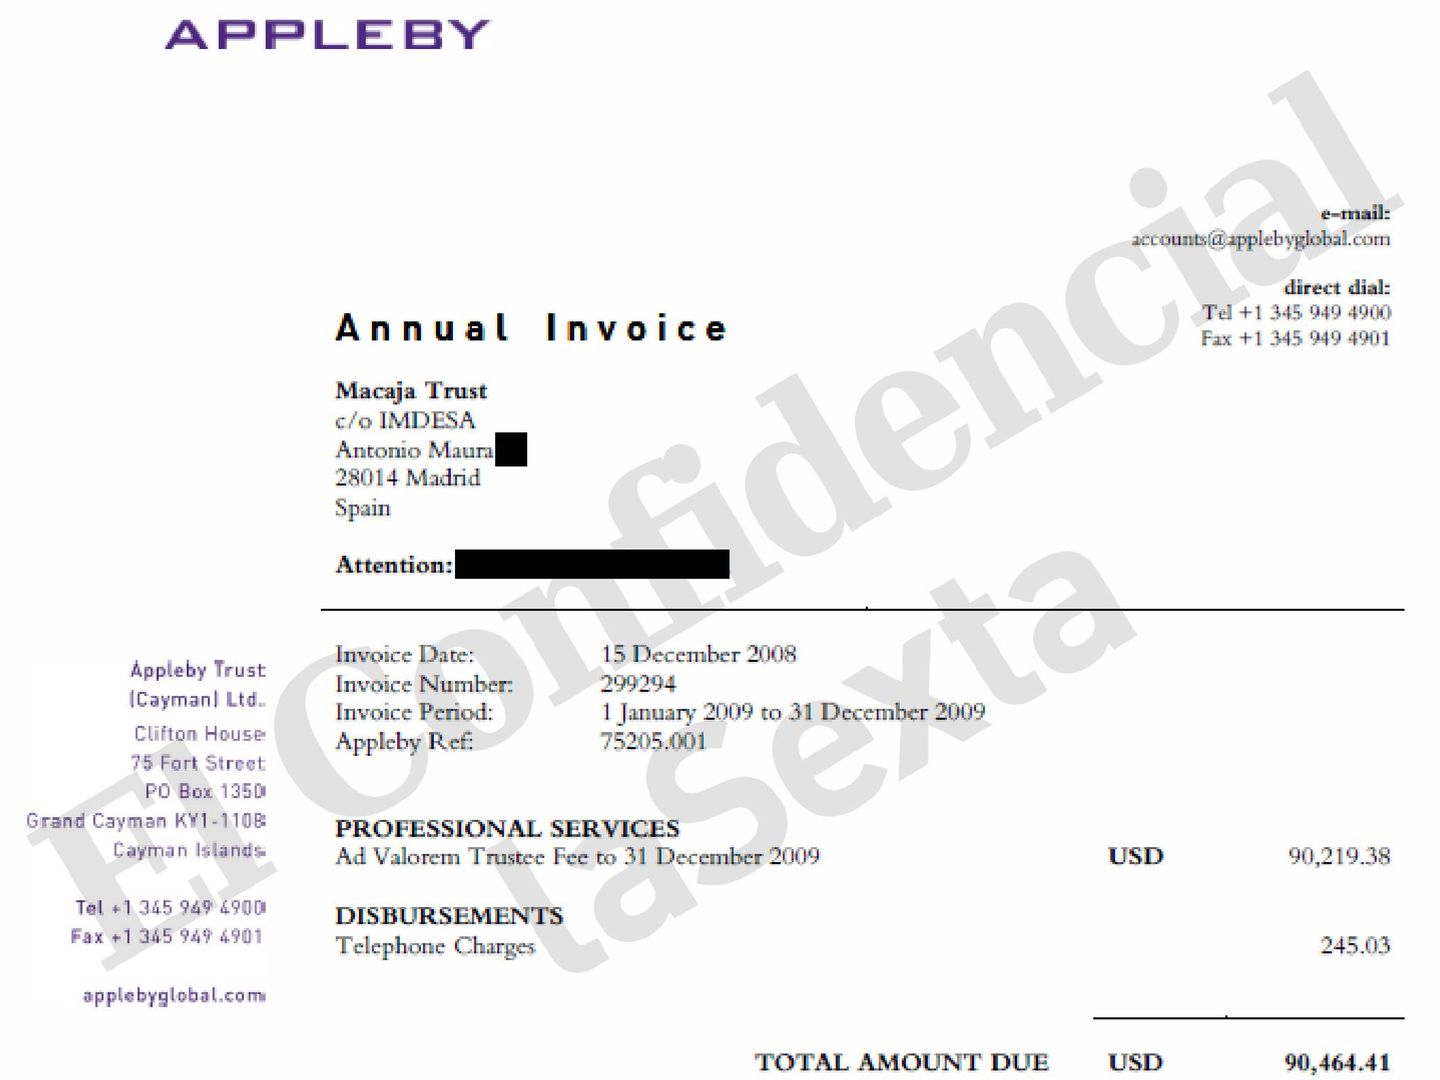 Factura de Appleby a Macaja Trust por los servicios prestados para 2009.